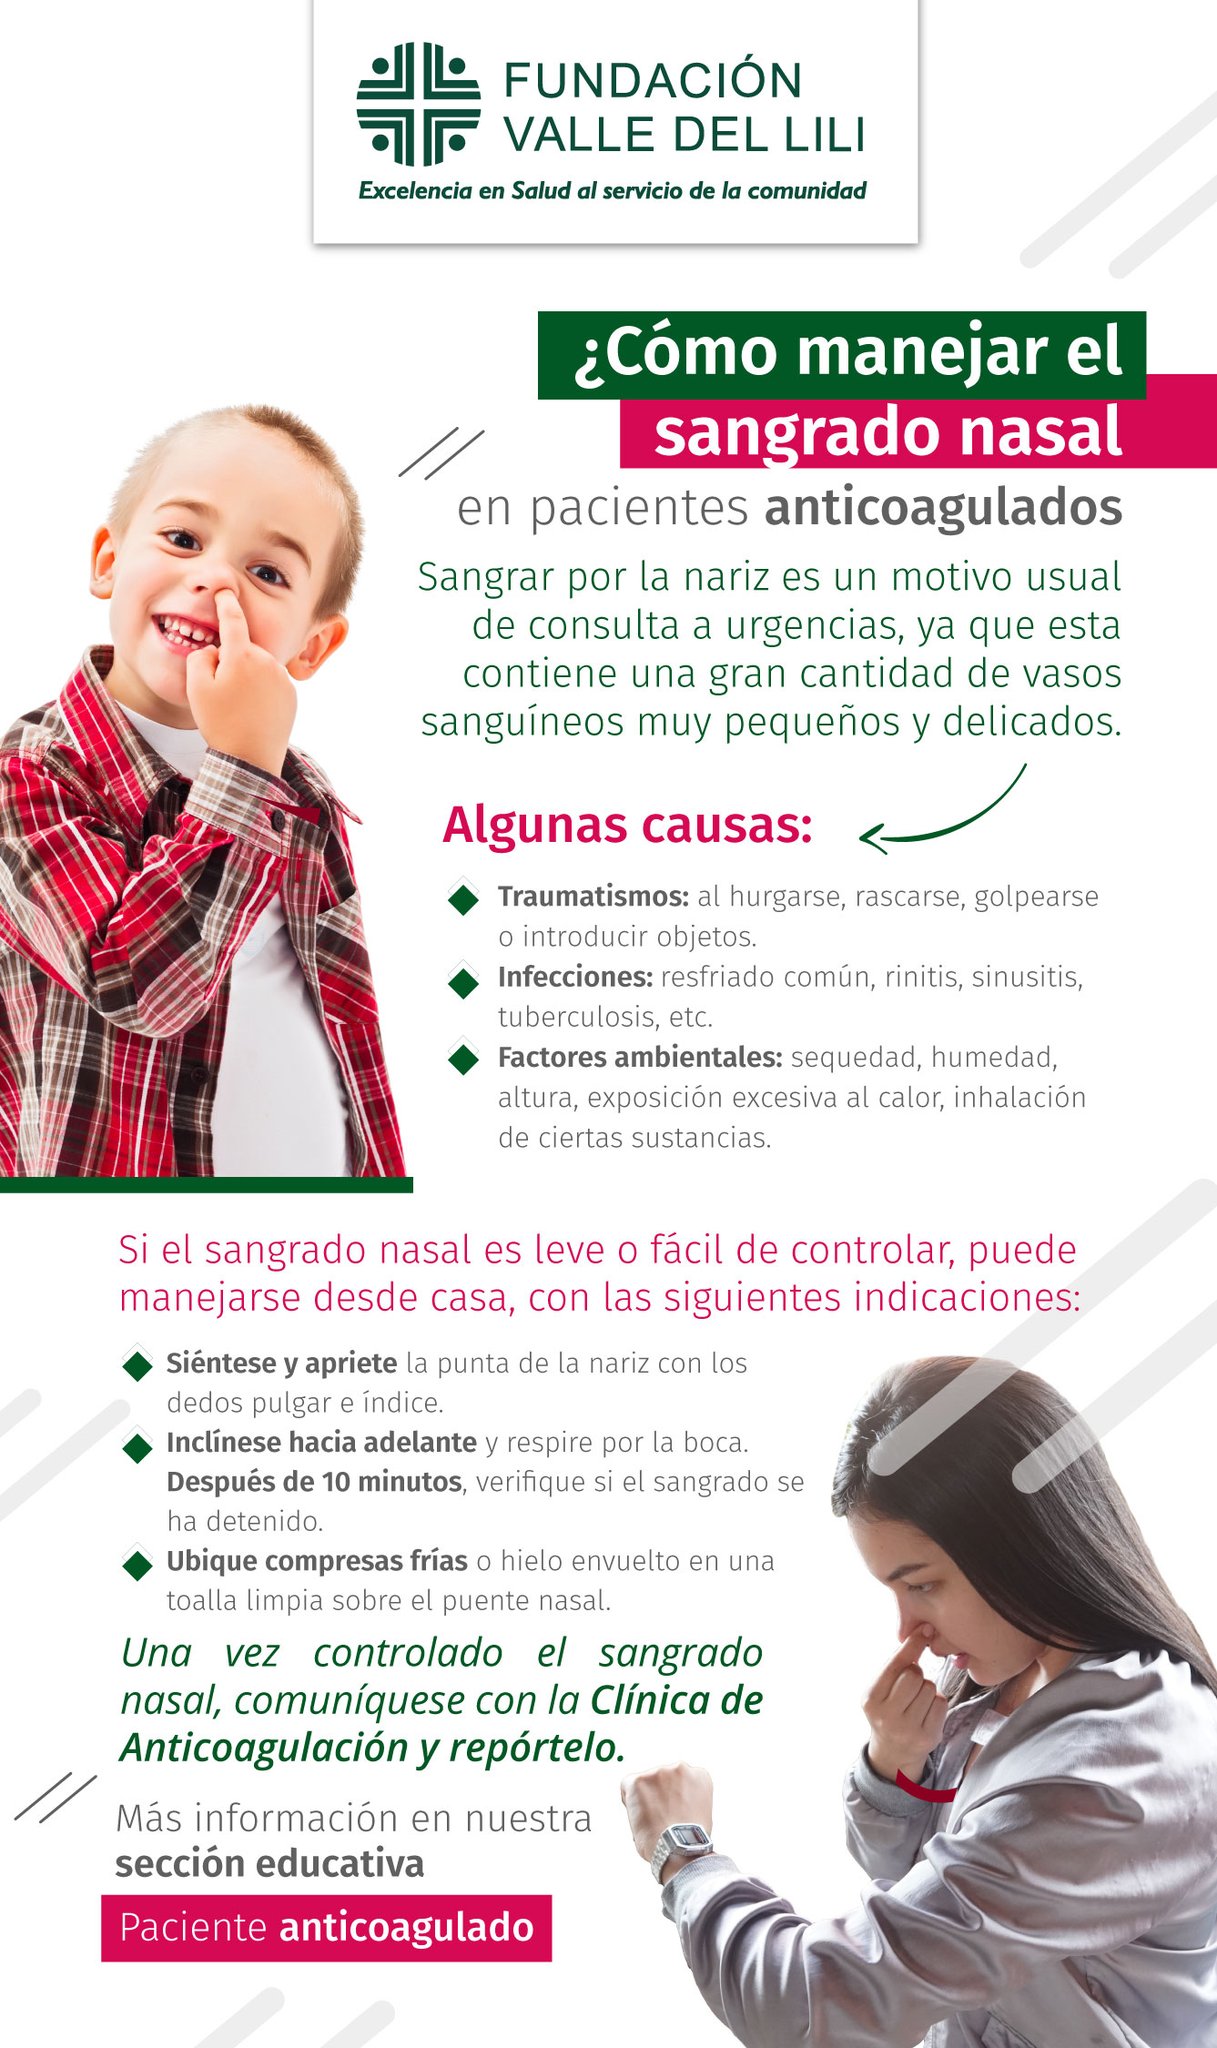 Expansión oriental Factura FundaciónValledelili on Twitter: "Compartimos recomendaciones sobre el  manejo de sangrado nasal en pacientes anticoagulados. Encuentra toda la  información en la sección de educación de nuestro sitio web:  https://t.co/WiojNgPjEh https://t.co/0SuItcwxqd ...